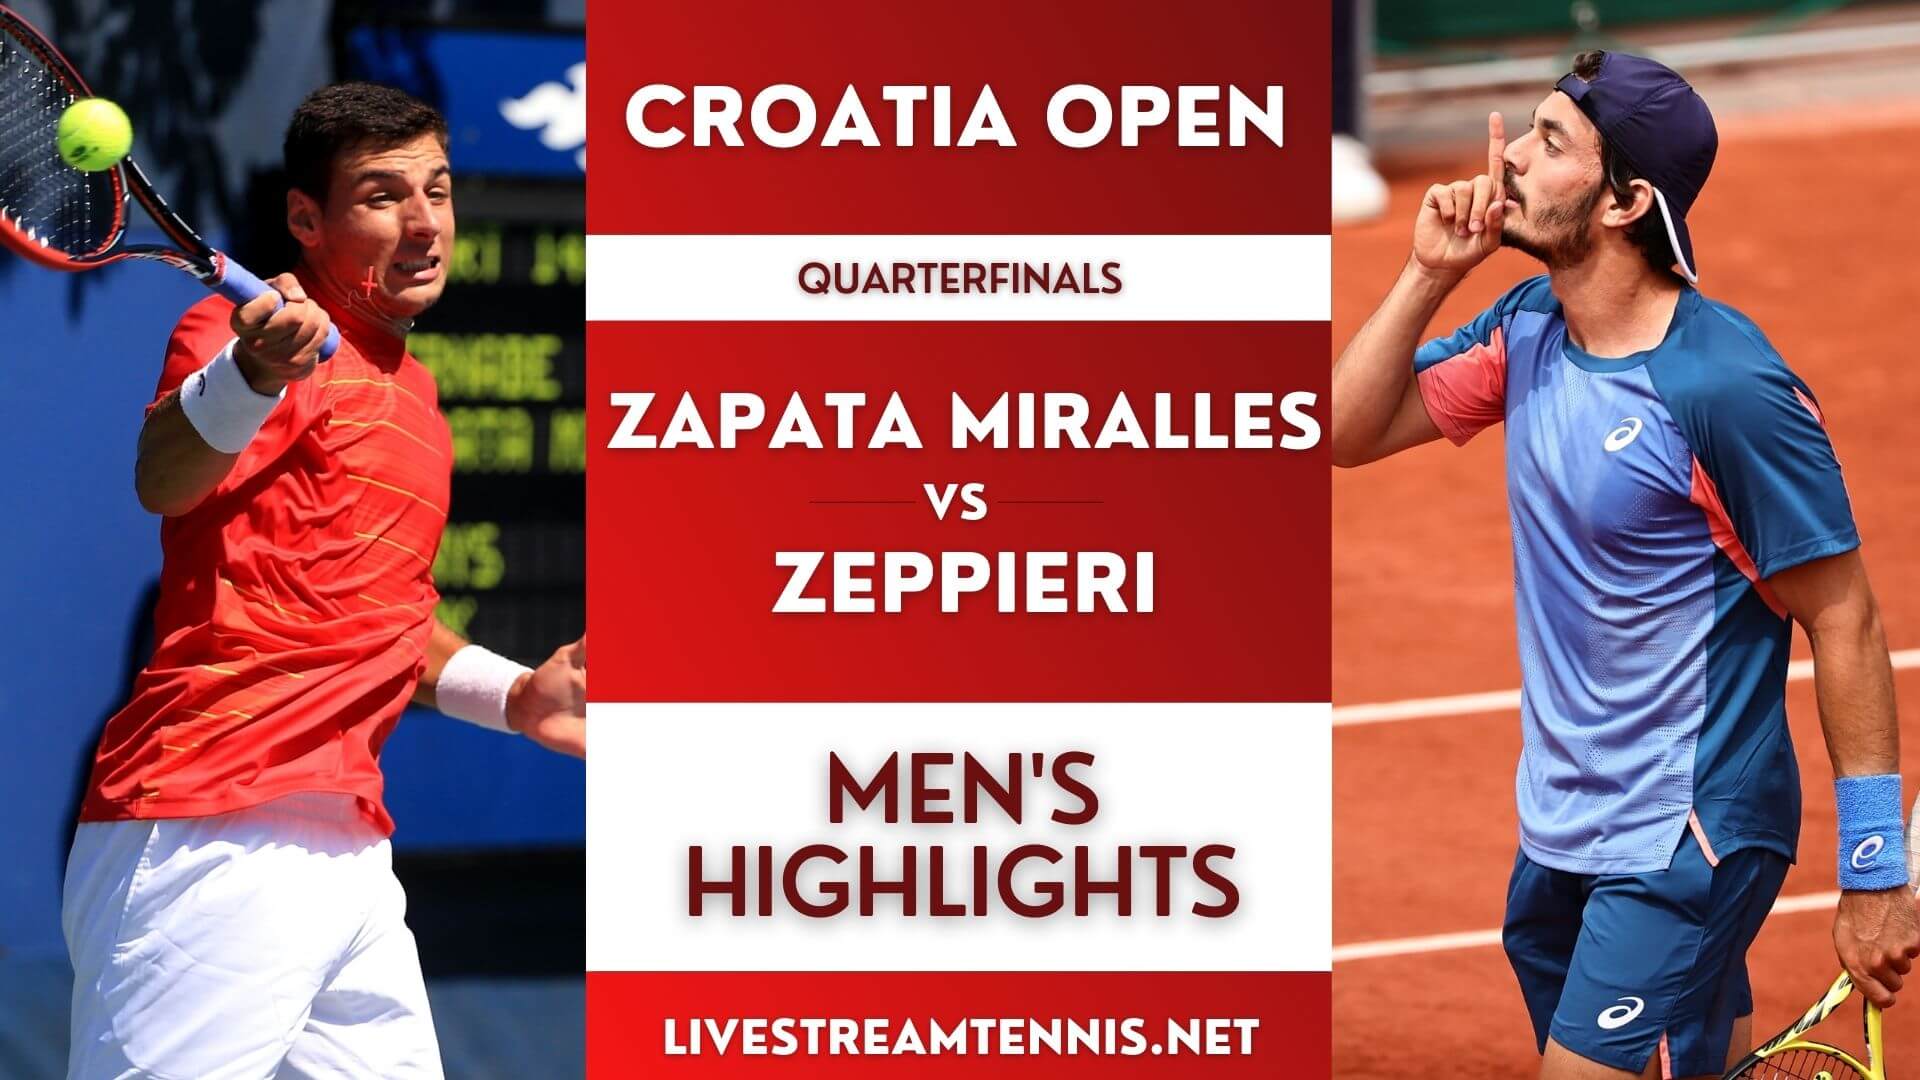 Croatia Open ATP Quarterfinal 2 Highlights 2022